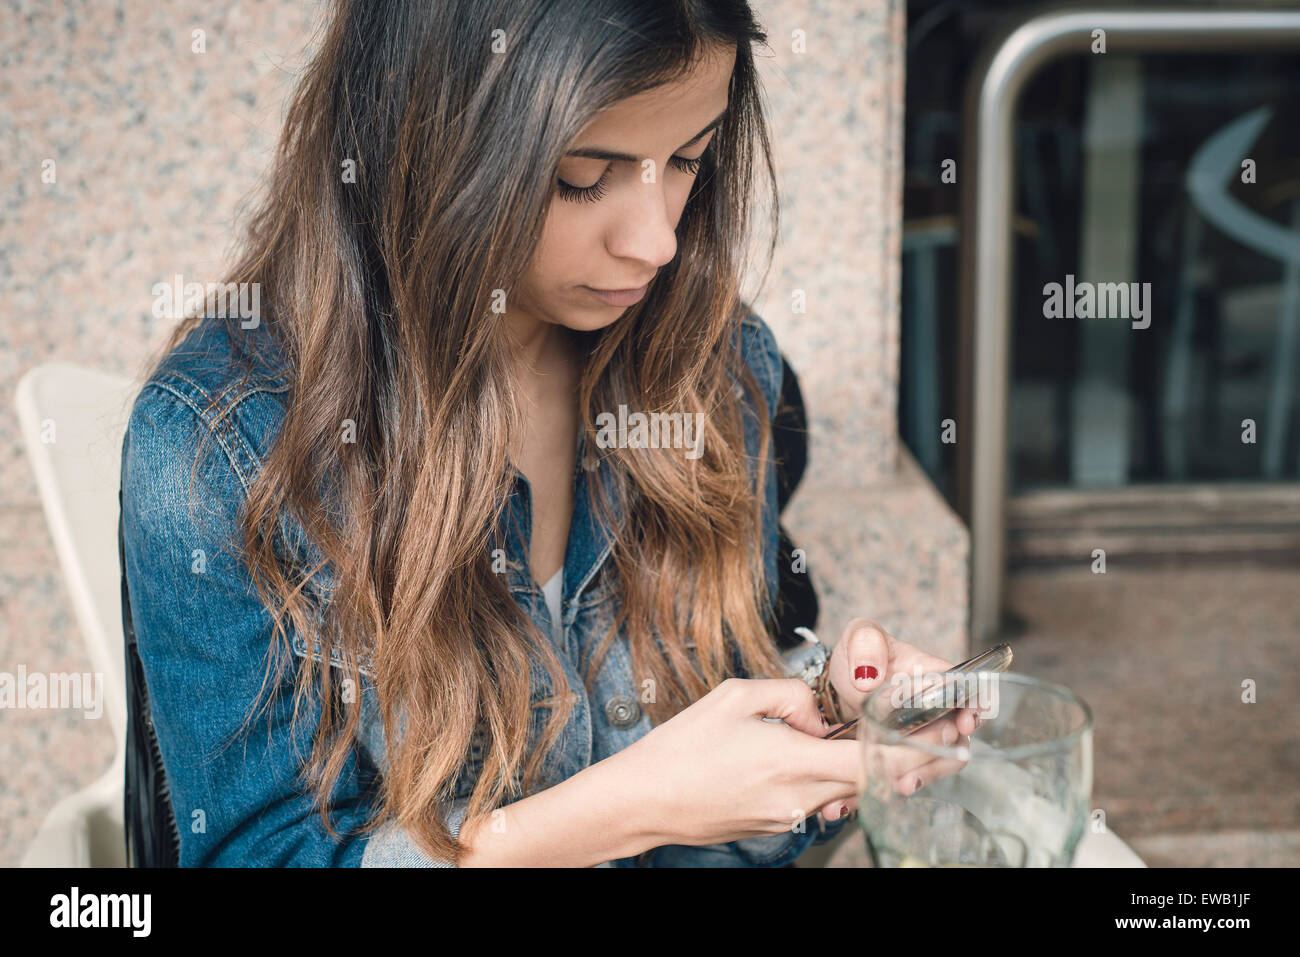 Brünette Frau eine SMS mit ihrem Smartphone. Frau nimmt einen Drink auf der Terrasse einer Bar. Stockfoto